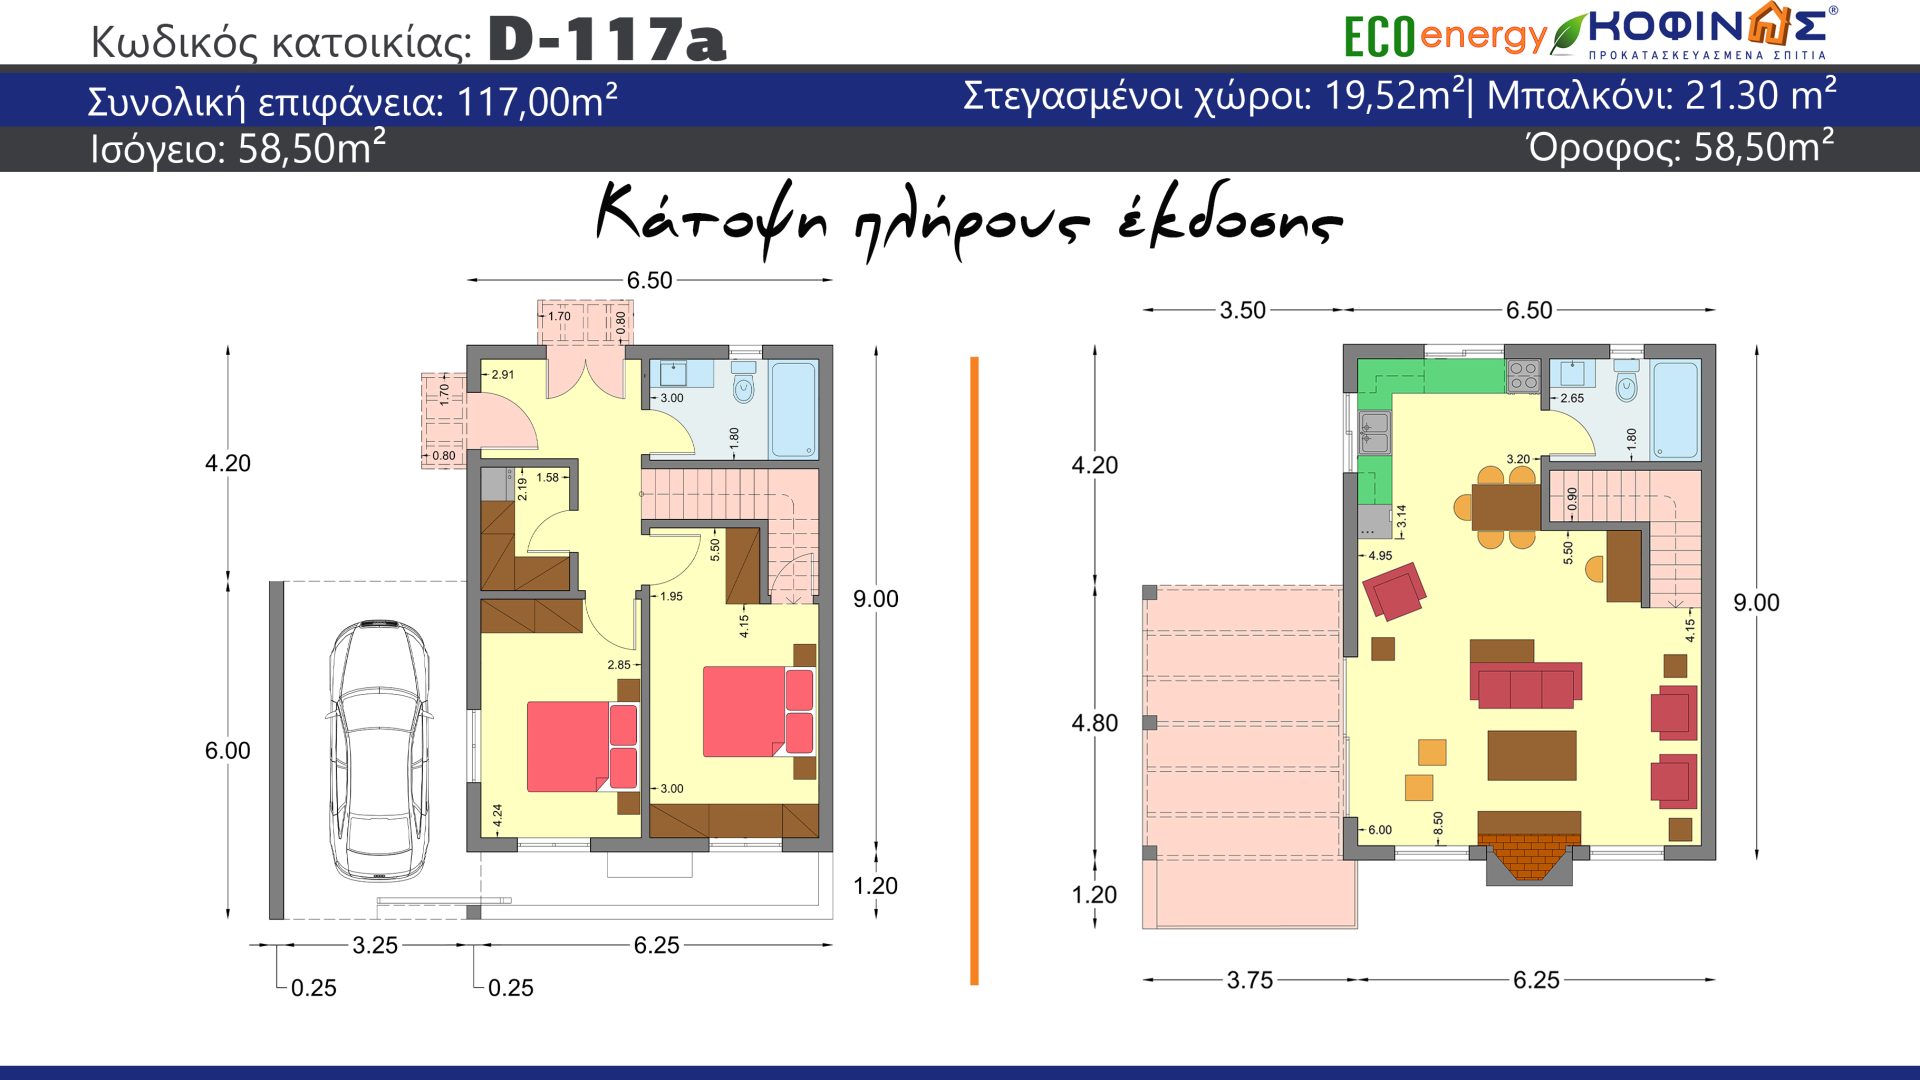 Διώροφη κατοικία D-117a, συνολικής επιφάνειας 117,00 τ.μ., στεγασμένοι χώροι 19,52 τ.μ.